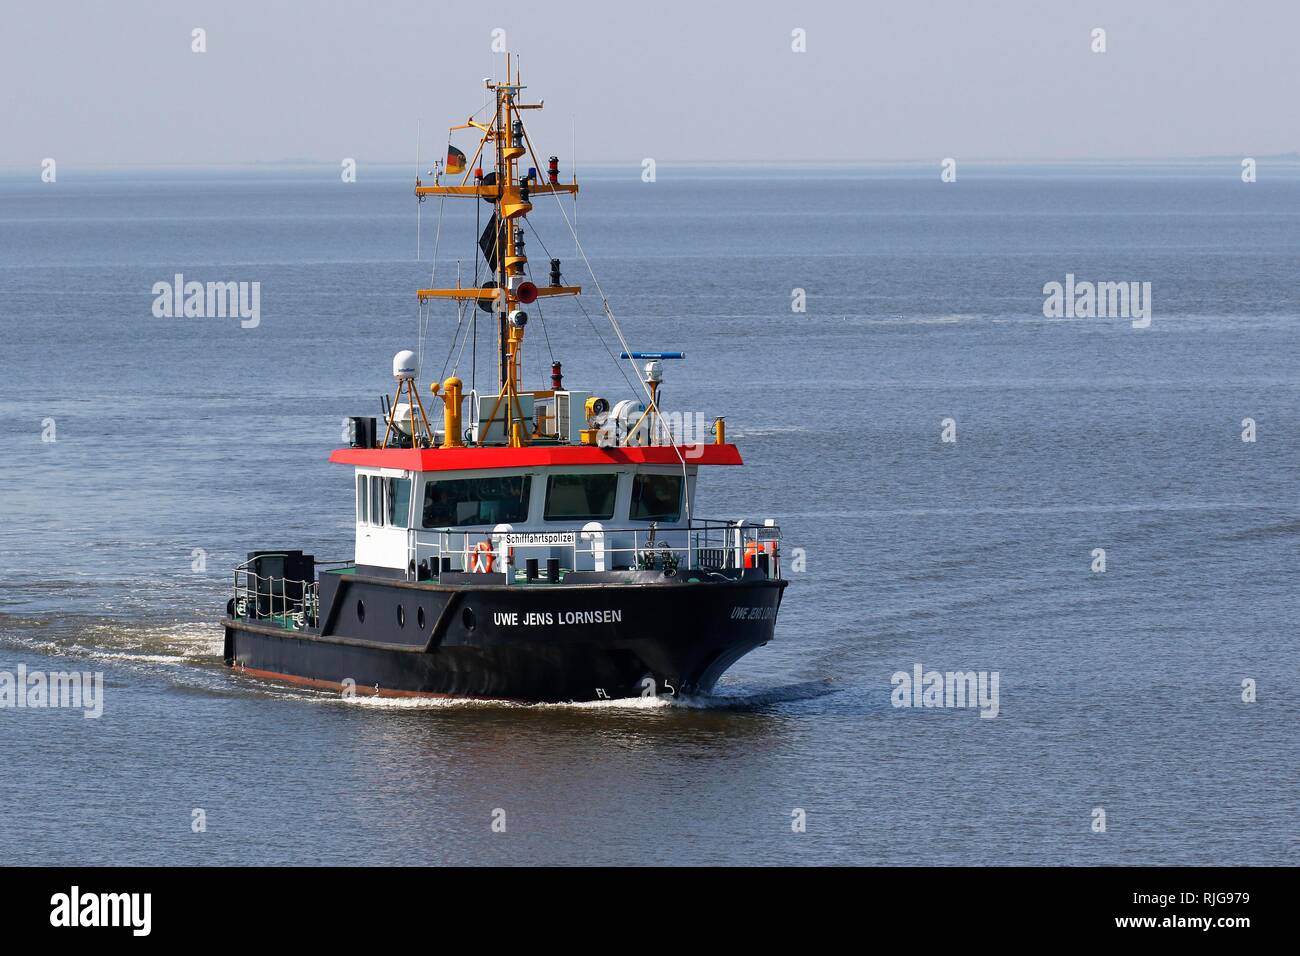 Navire de l'enquête, la police maritime Uwe Jens Lornsen, côte de la mer du Nord, Schleswig-Holstein, Allemagne Banque D'Images